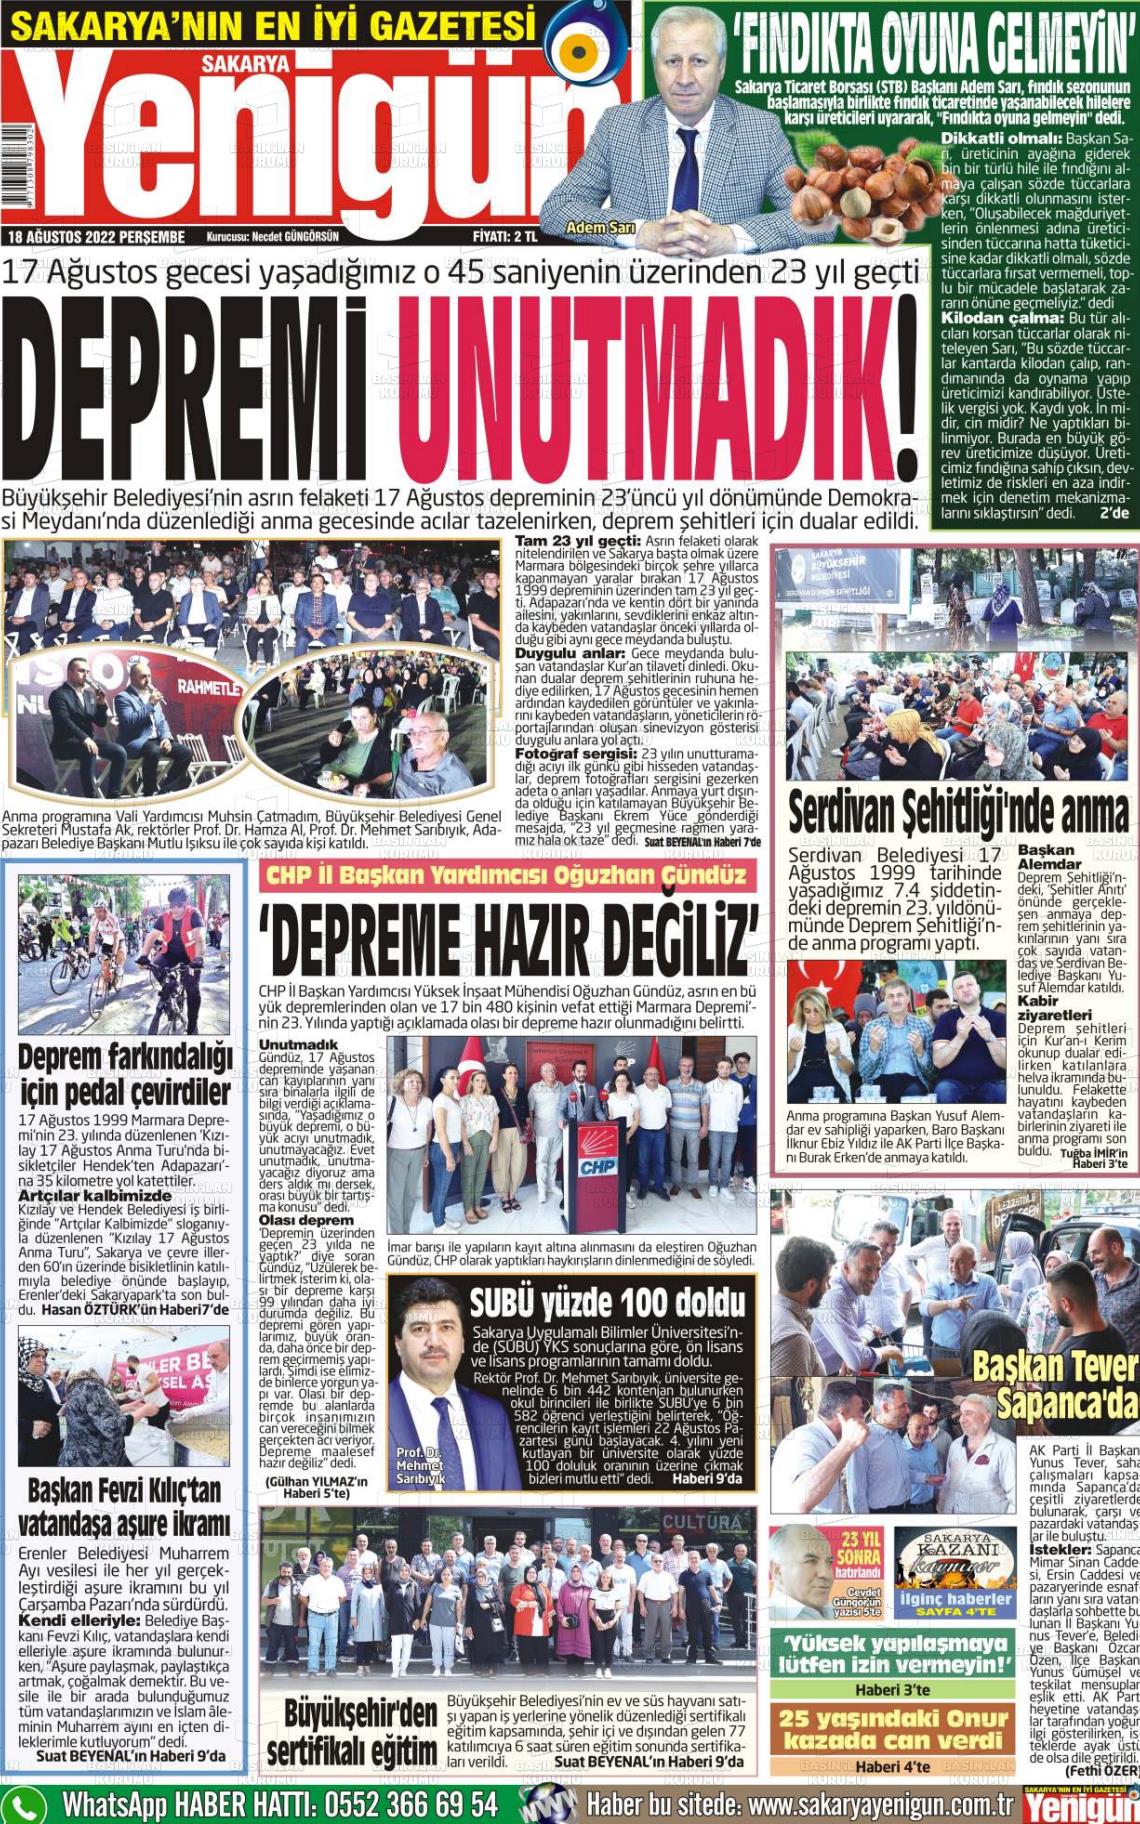 18 Ağustos 2022 Sakarya Yenigün Gazete Manşeti